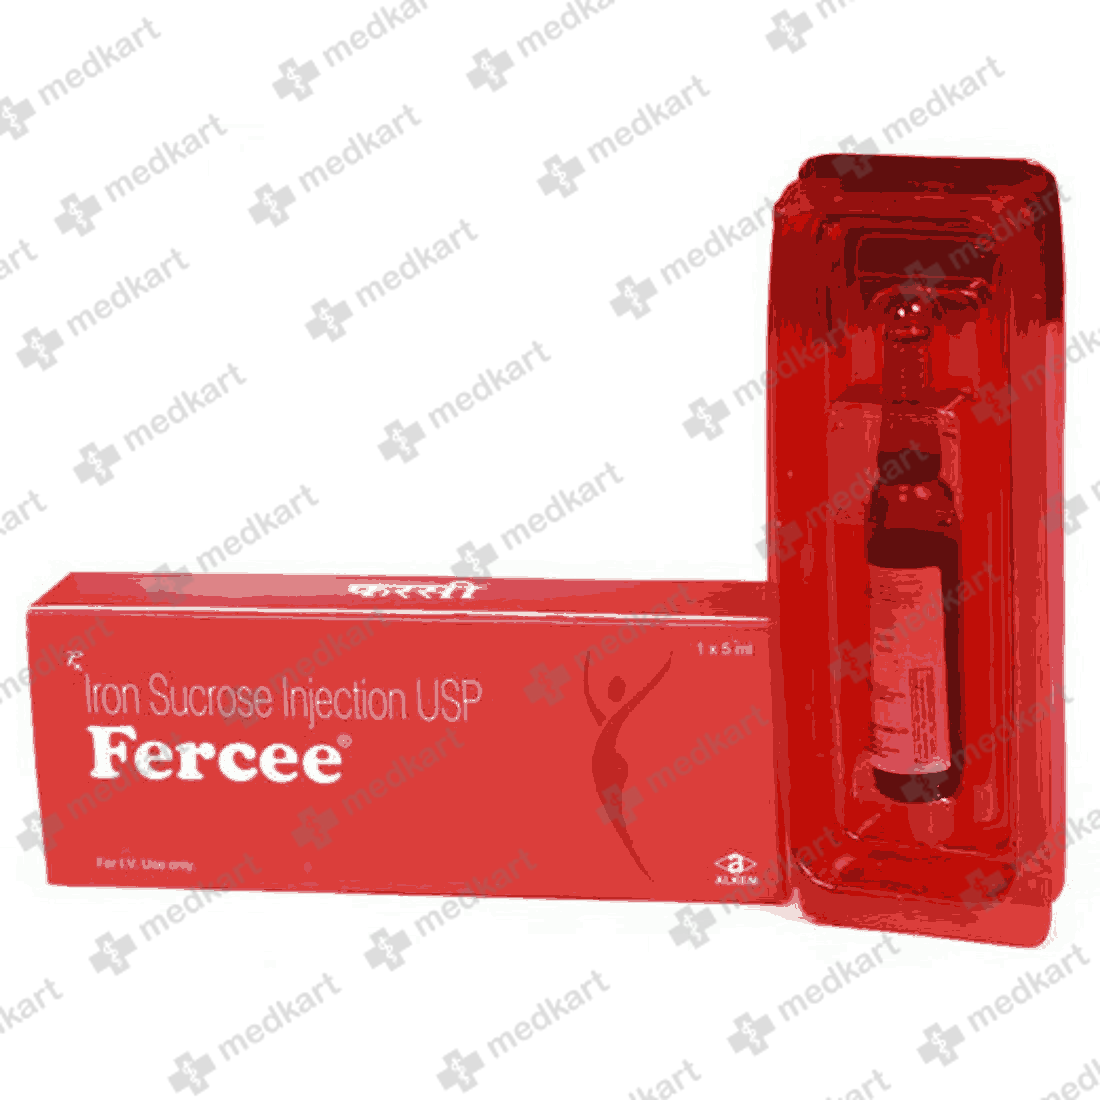 fercee-injection